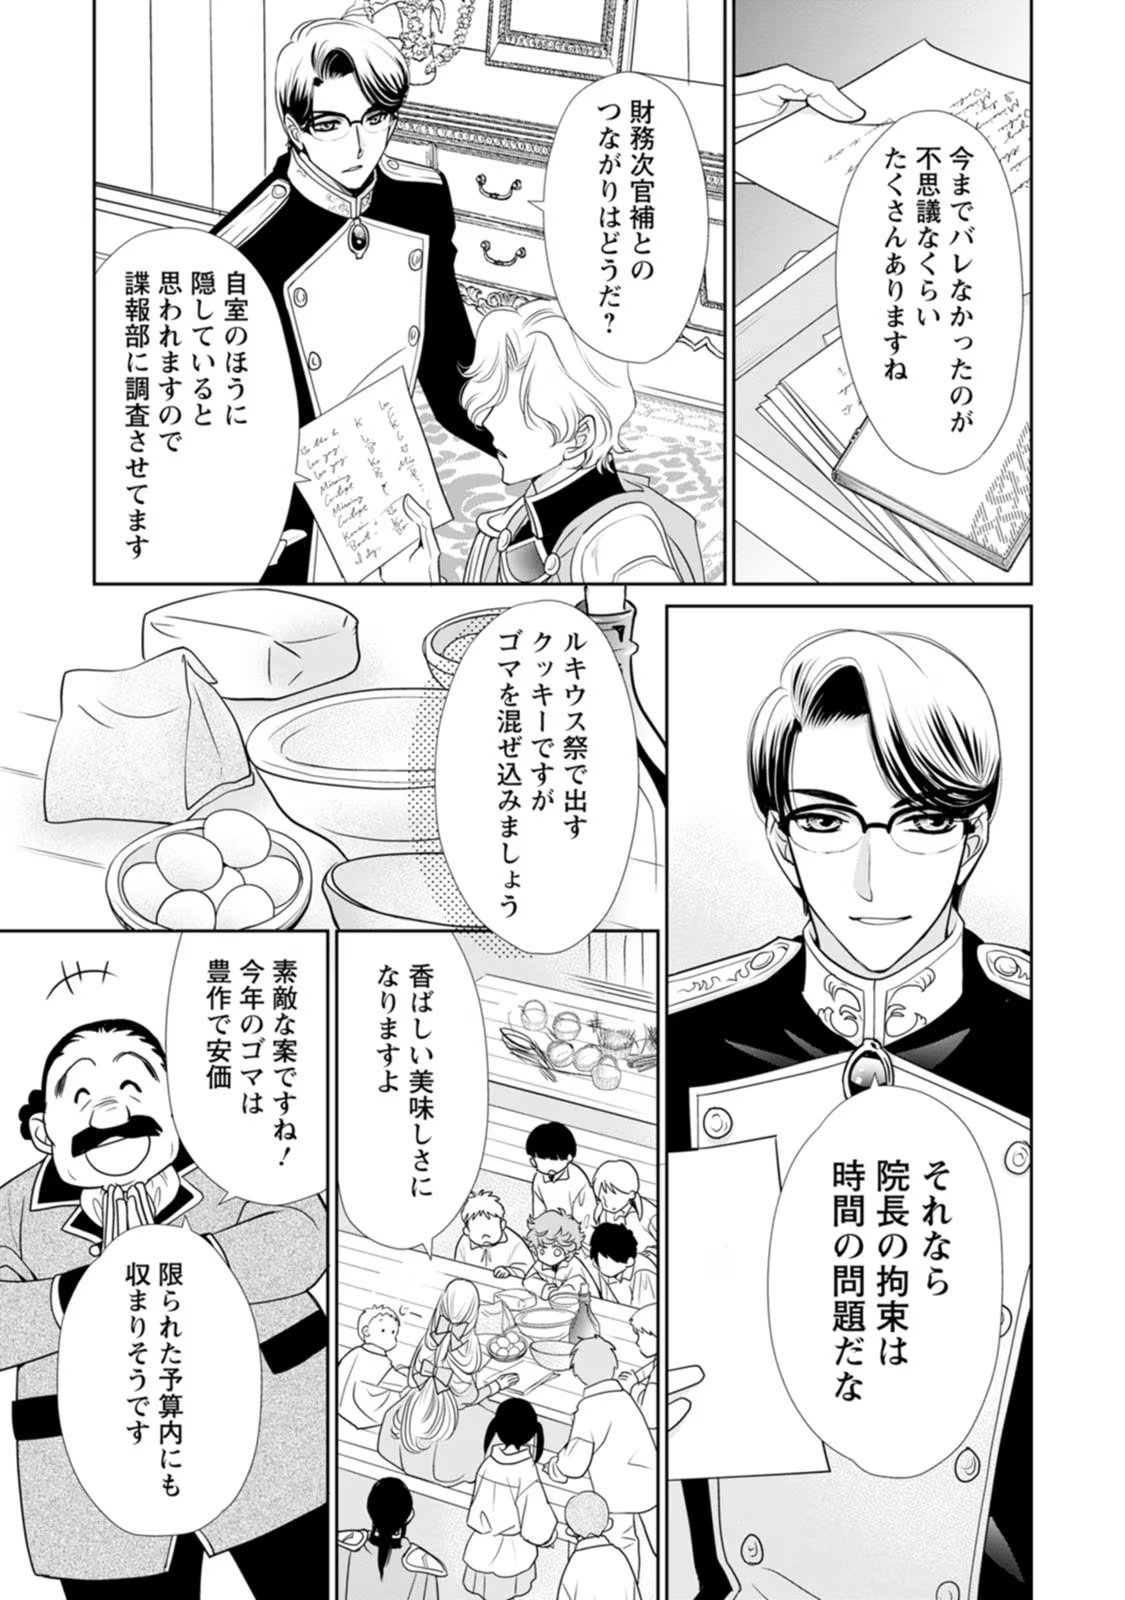 Shinjitsu no Ai wo Mitsuketa to Iwarete Konyaku Haki Saretanode, Fukuen wo Semararete mo Imasara mo Osoi desu! - Chapter 20 - Page 15